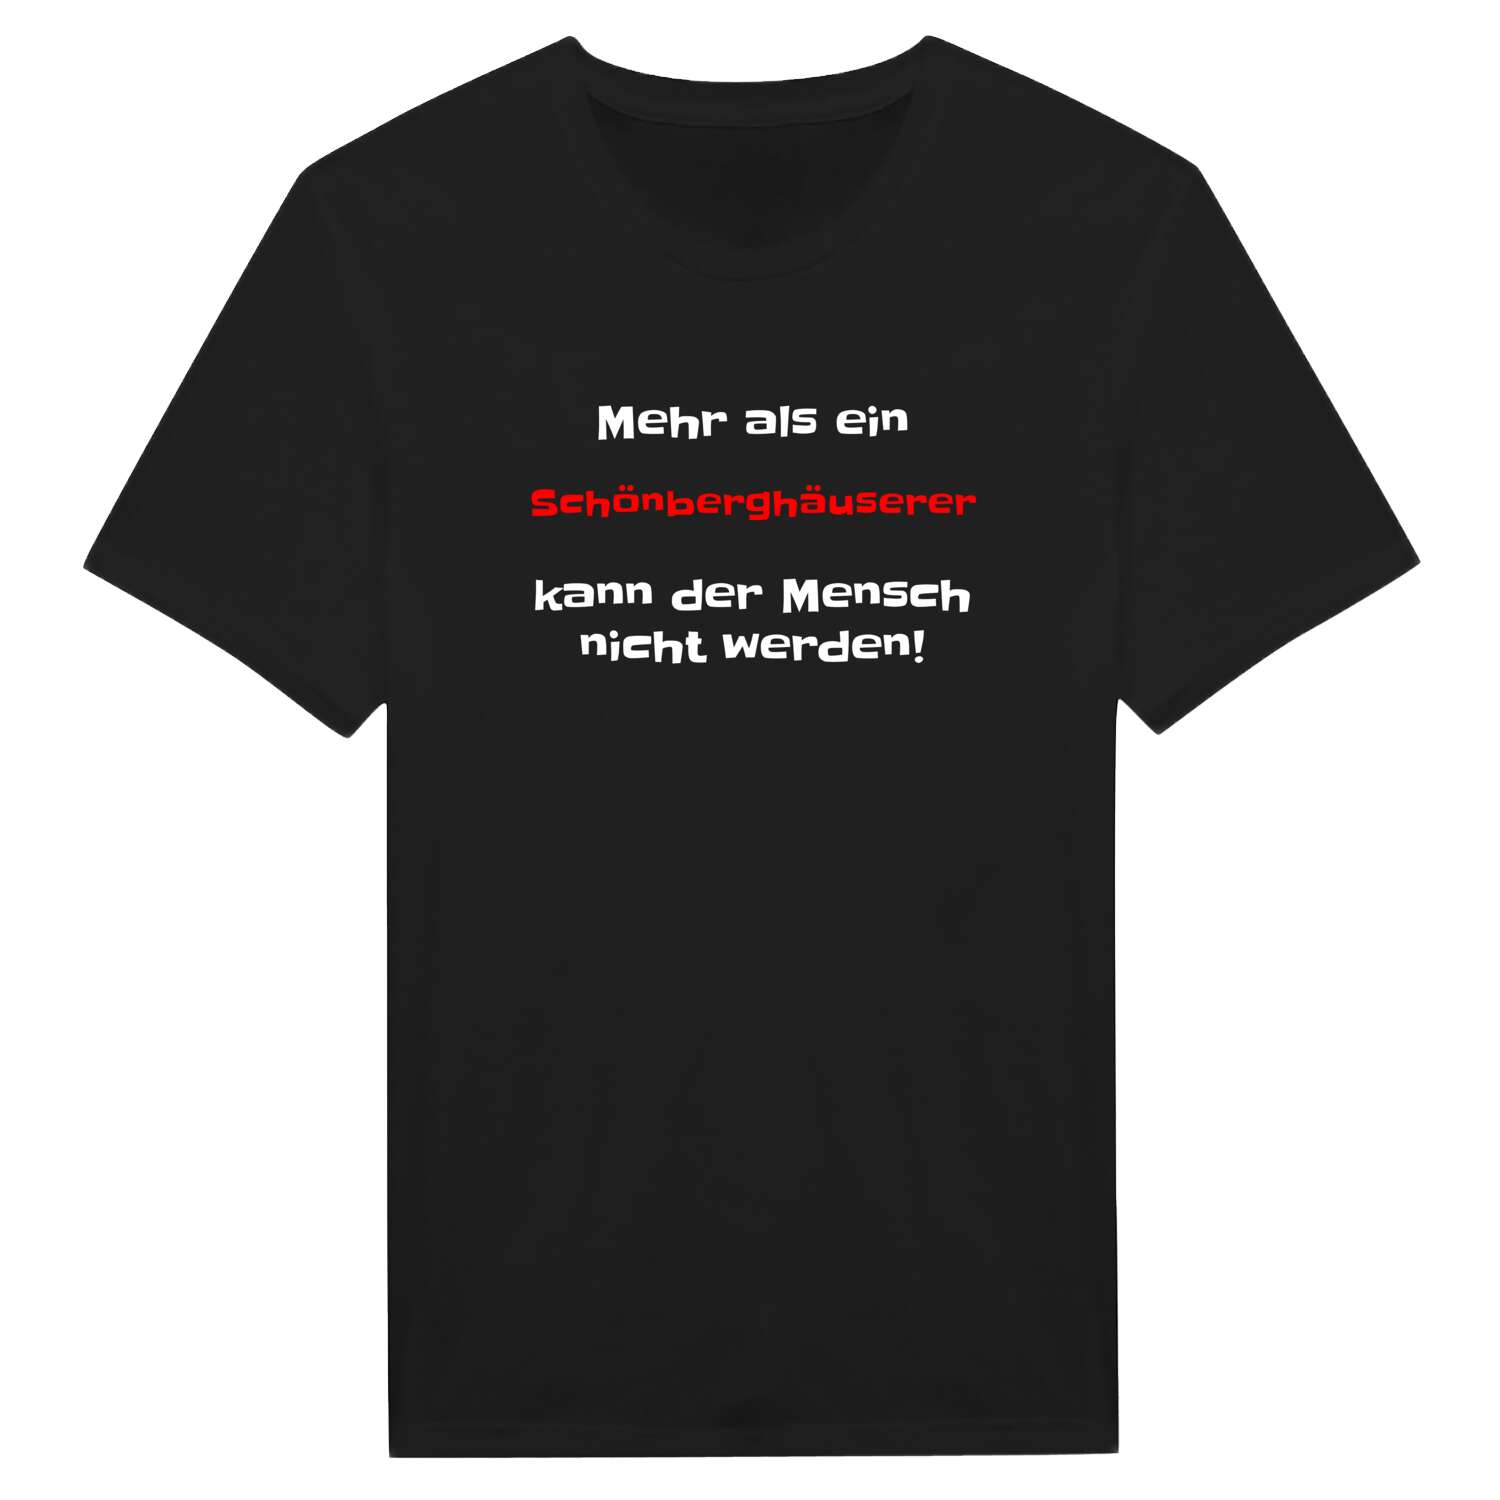 Schönberghäuser T-Shirt »Mehr als ein«